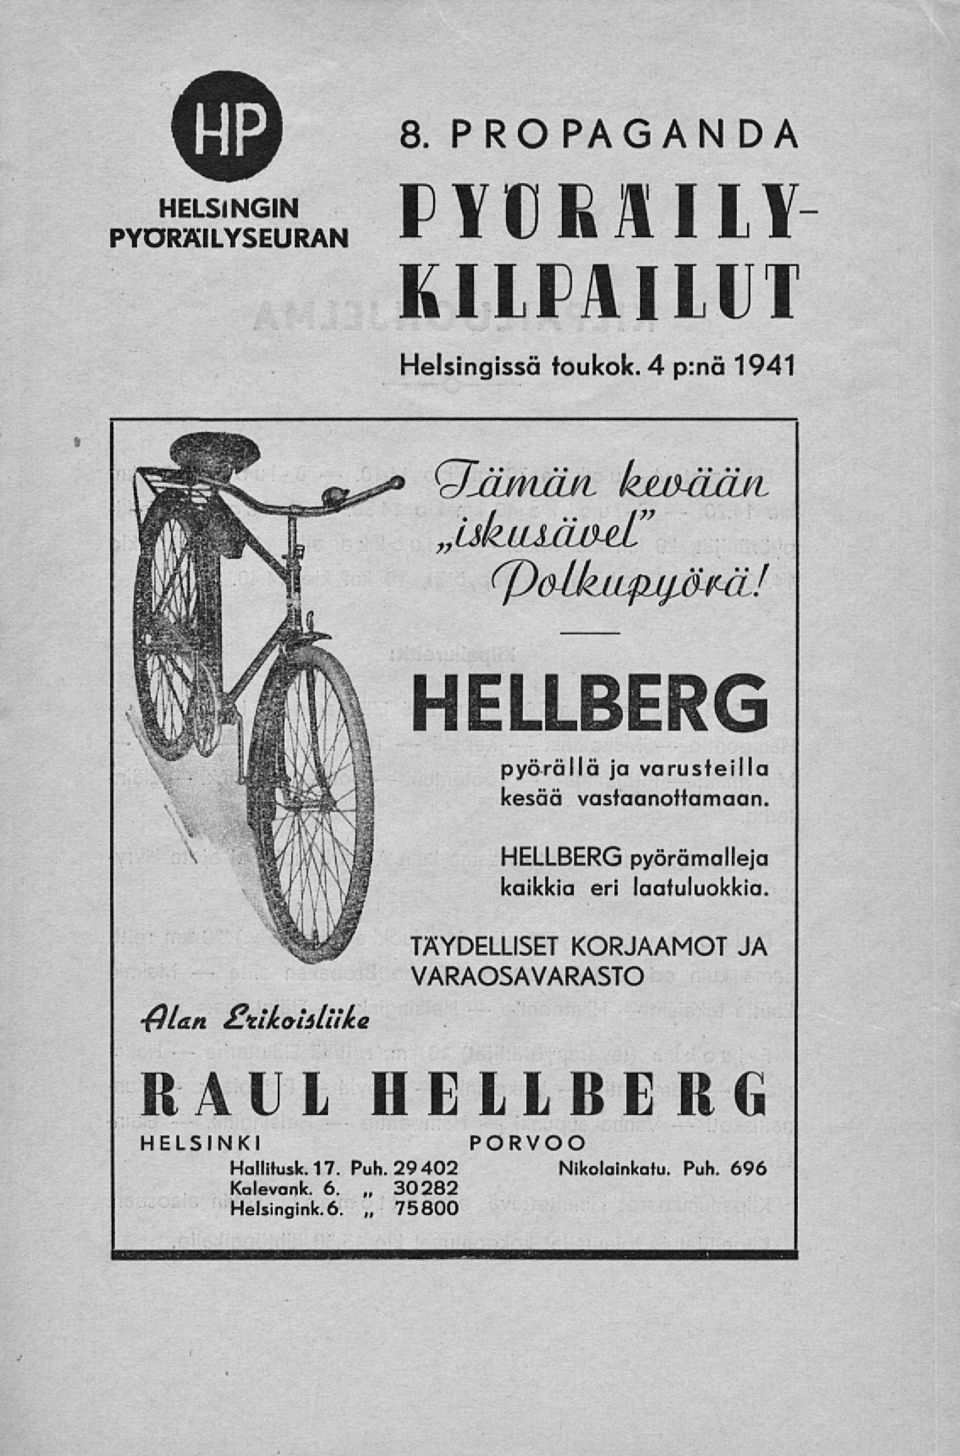 4 p:nä 1941 uku äa&l" H/an c-tlkoiitiike HELLBERG pyörällä ja varusteilla kesää vastaanottamaan.